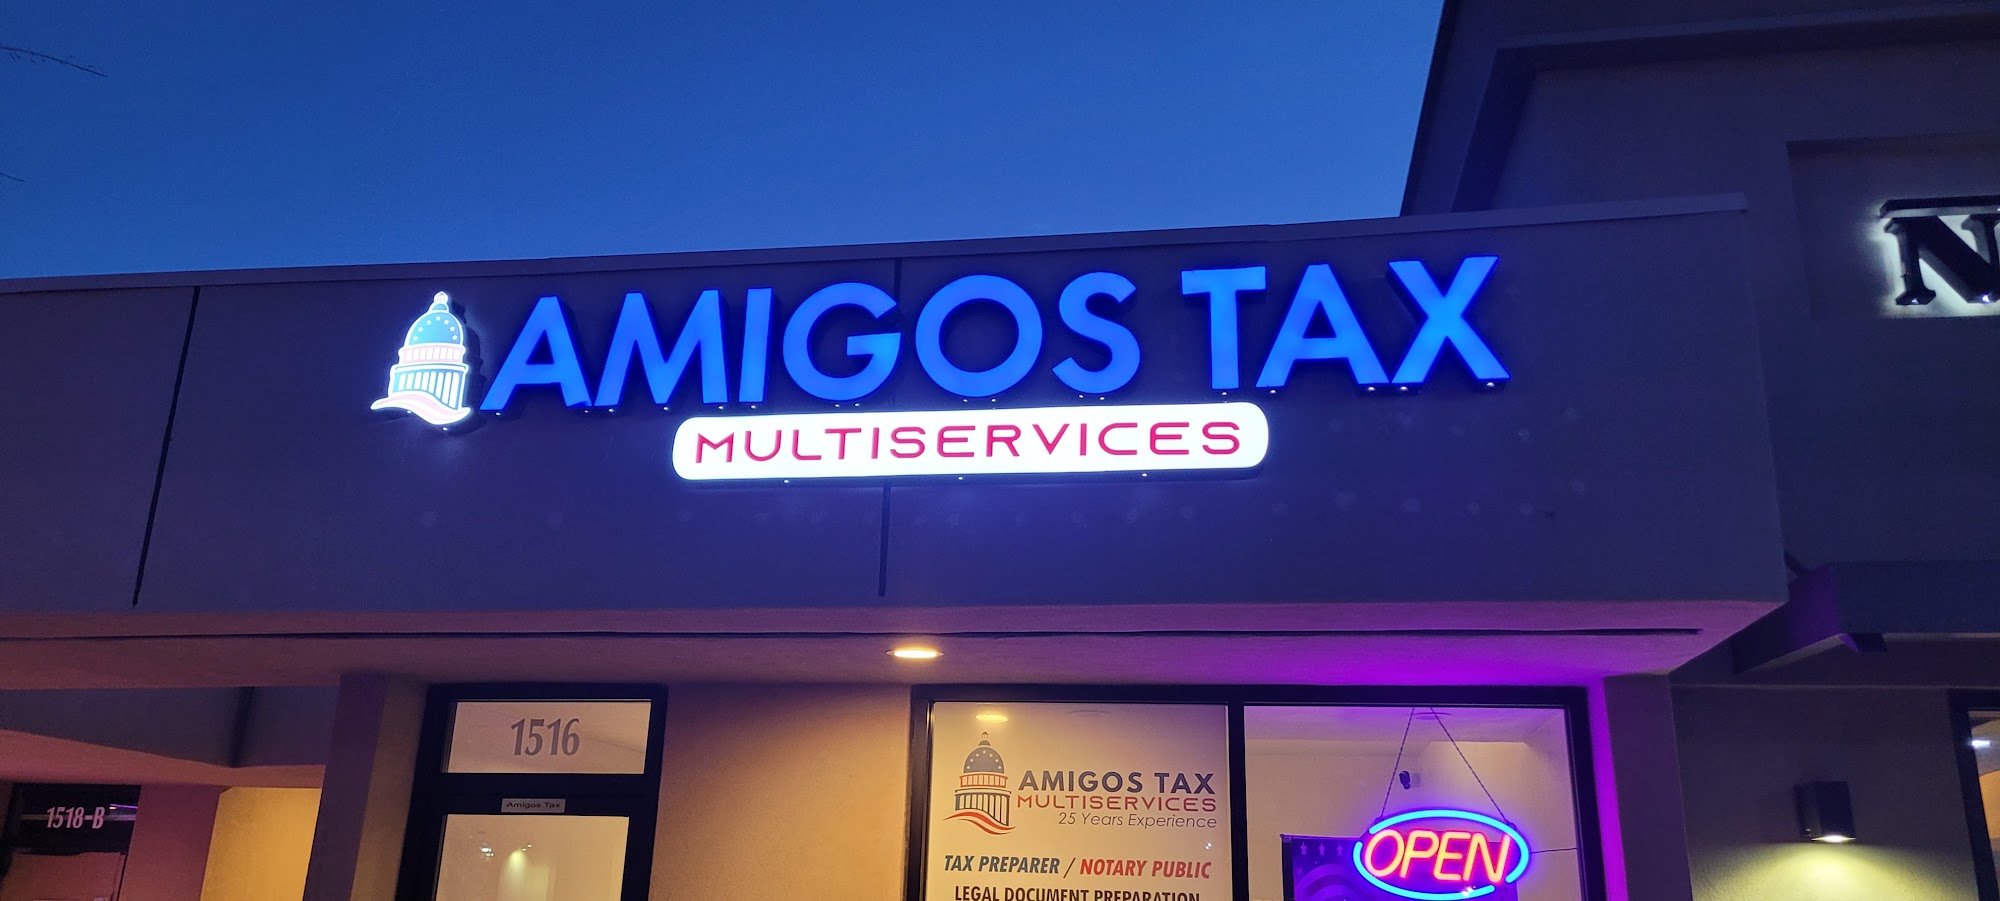 Amigos Tax Multiservices